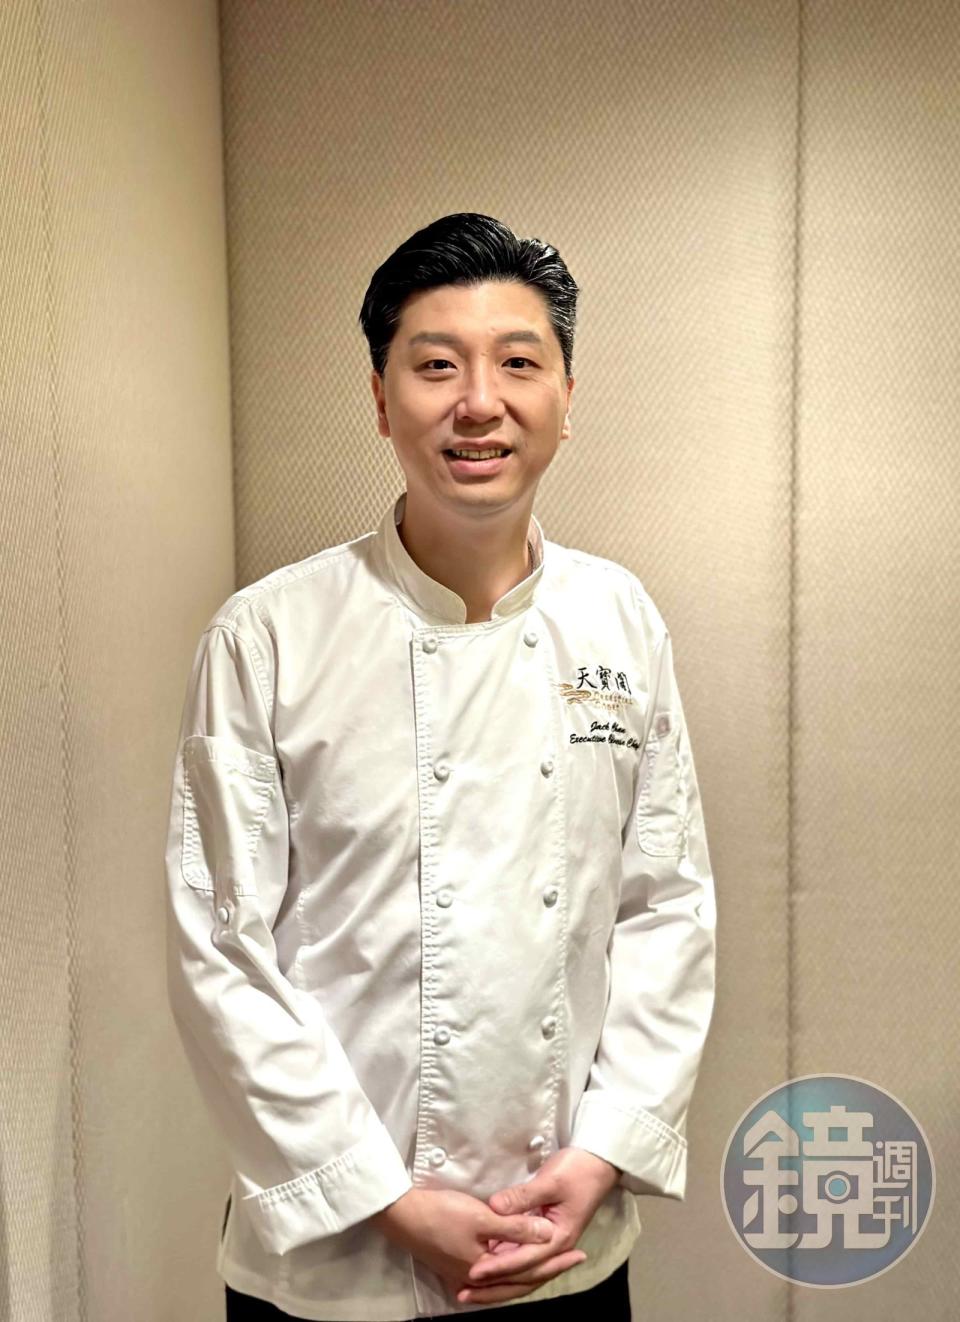 中菜行政總廚陳偉傑除了資歷豐富，更熟悉海味食材的拿捏，不定期帶給饕客餐桌上的驚喜。